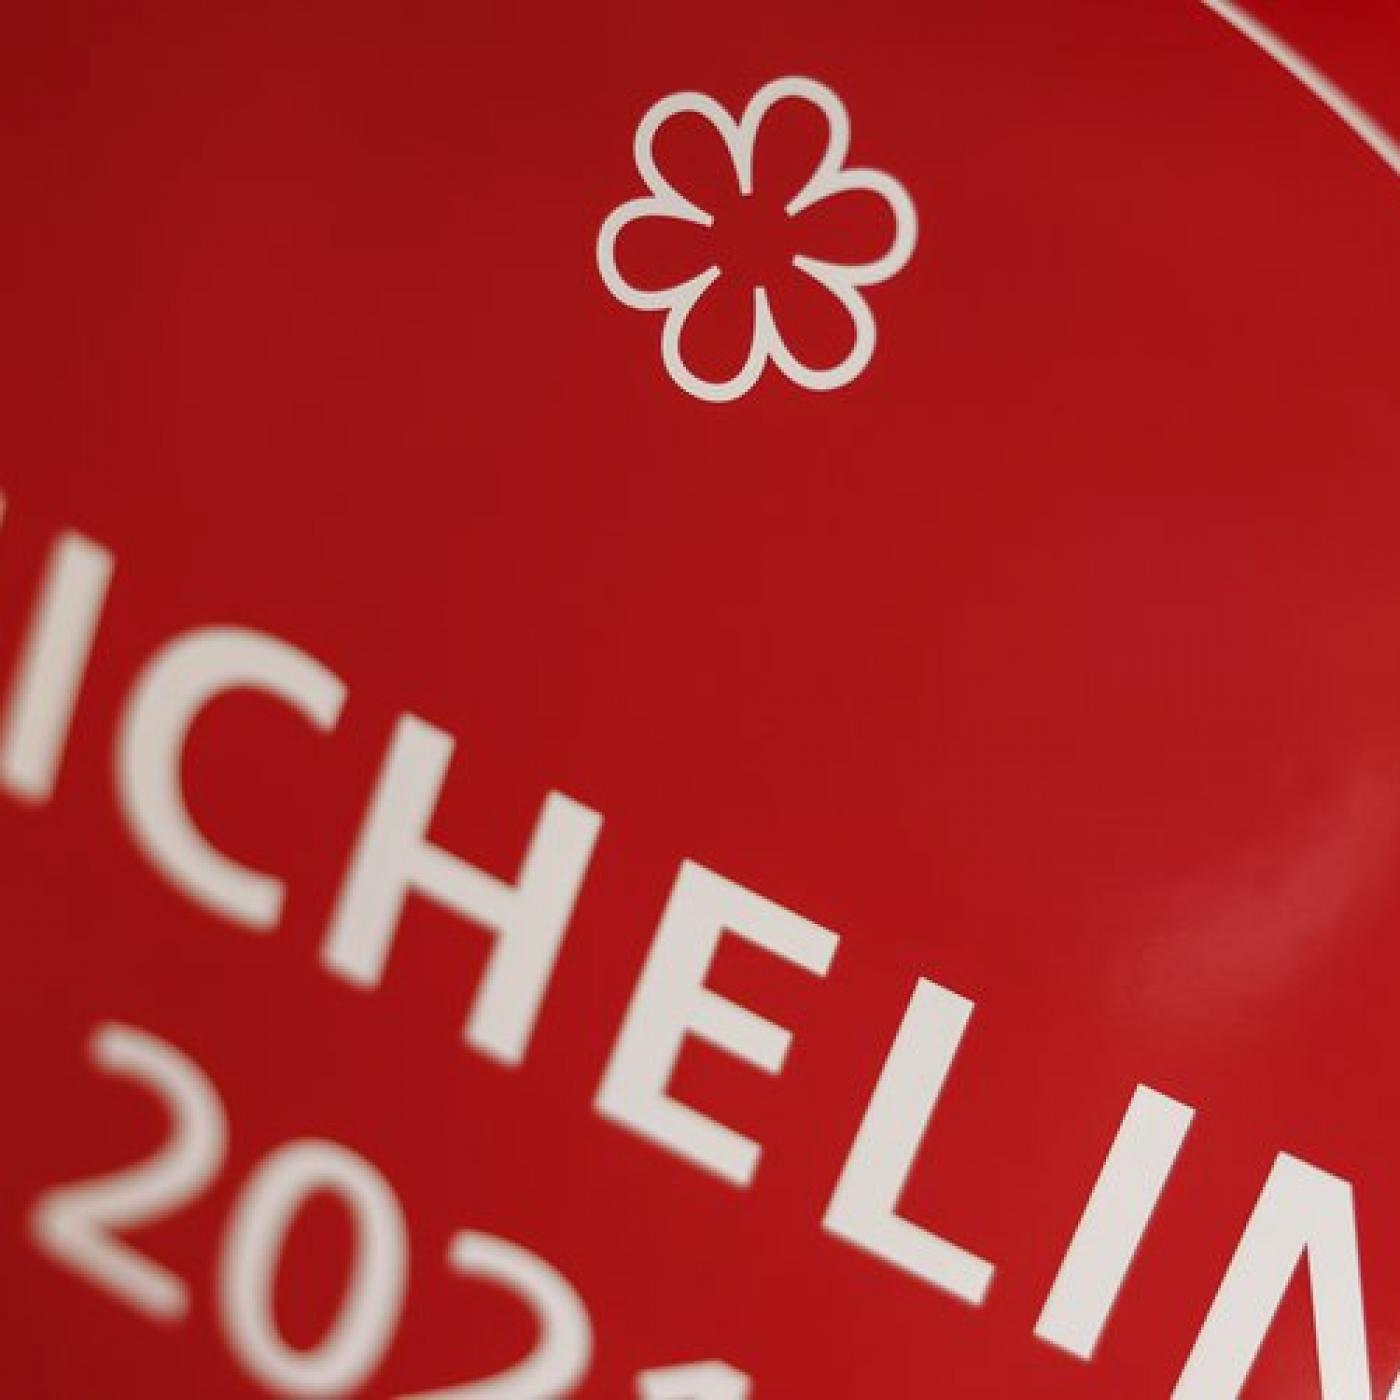 Quarante neuf restaurants étoilés par le guide Michelin en Côte d’Azur cette année